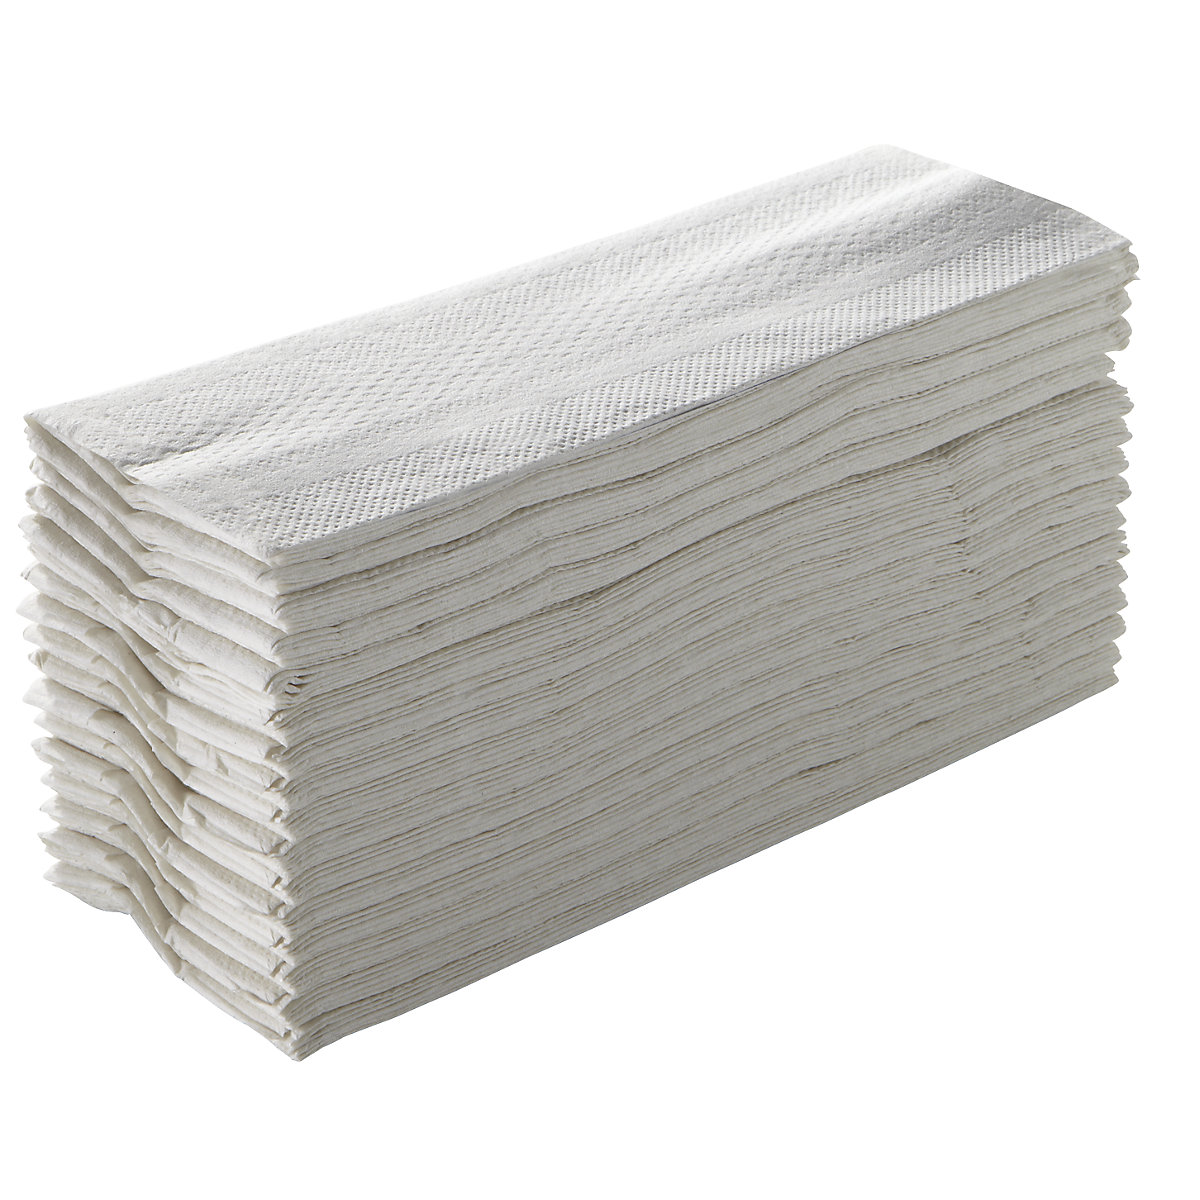 Folded paper towels – TORK